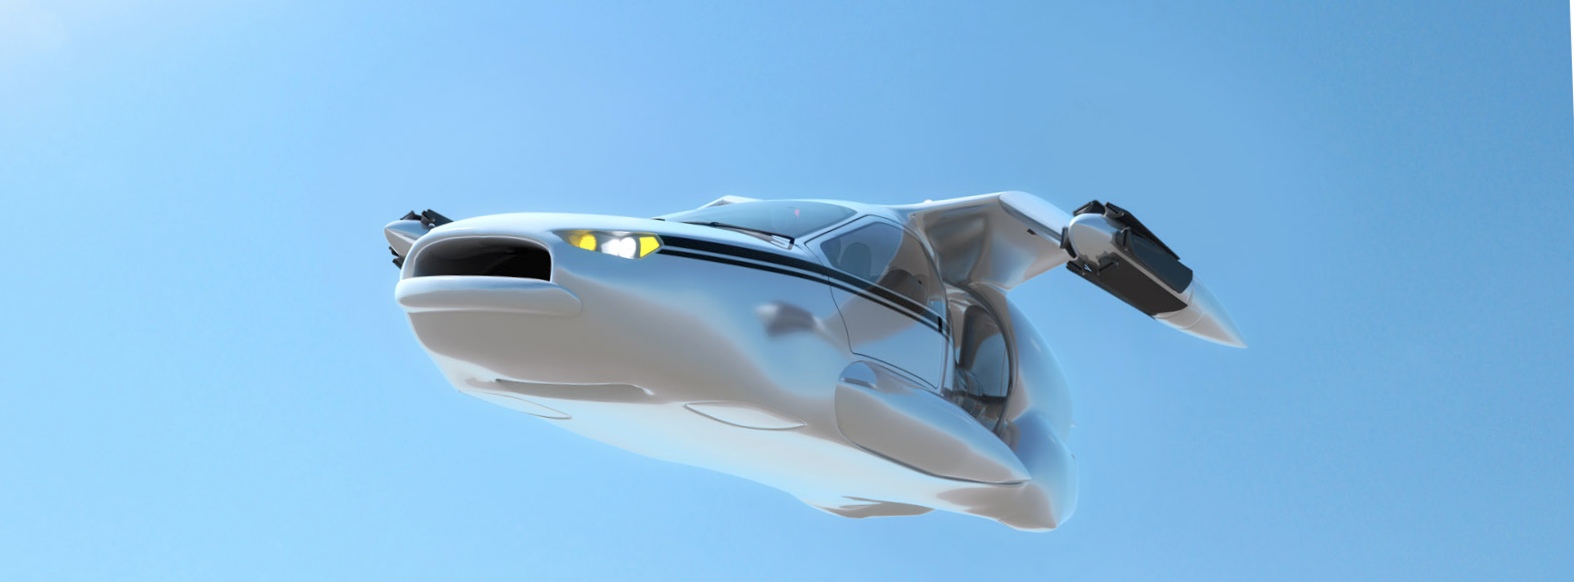 Летающий автомобиль terrafugia будет доступен в продаже через пару лет